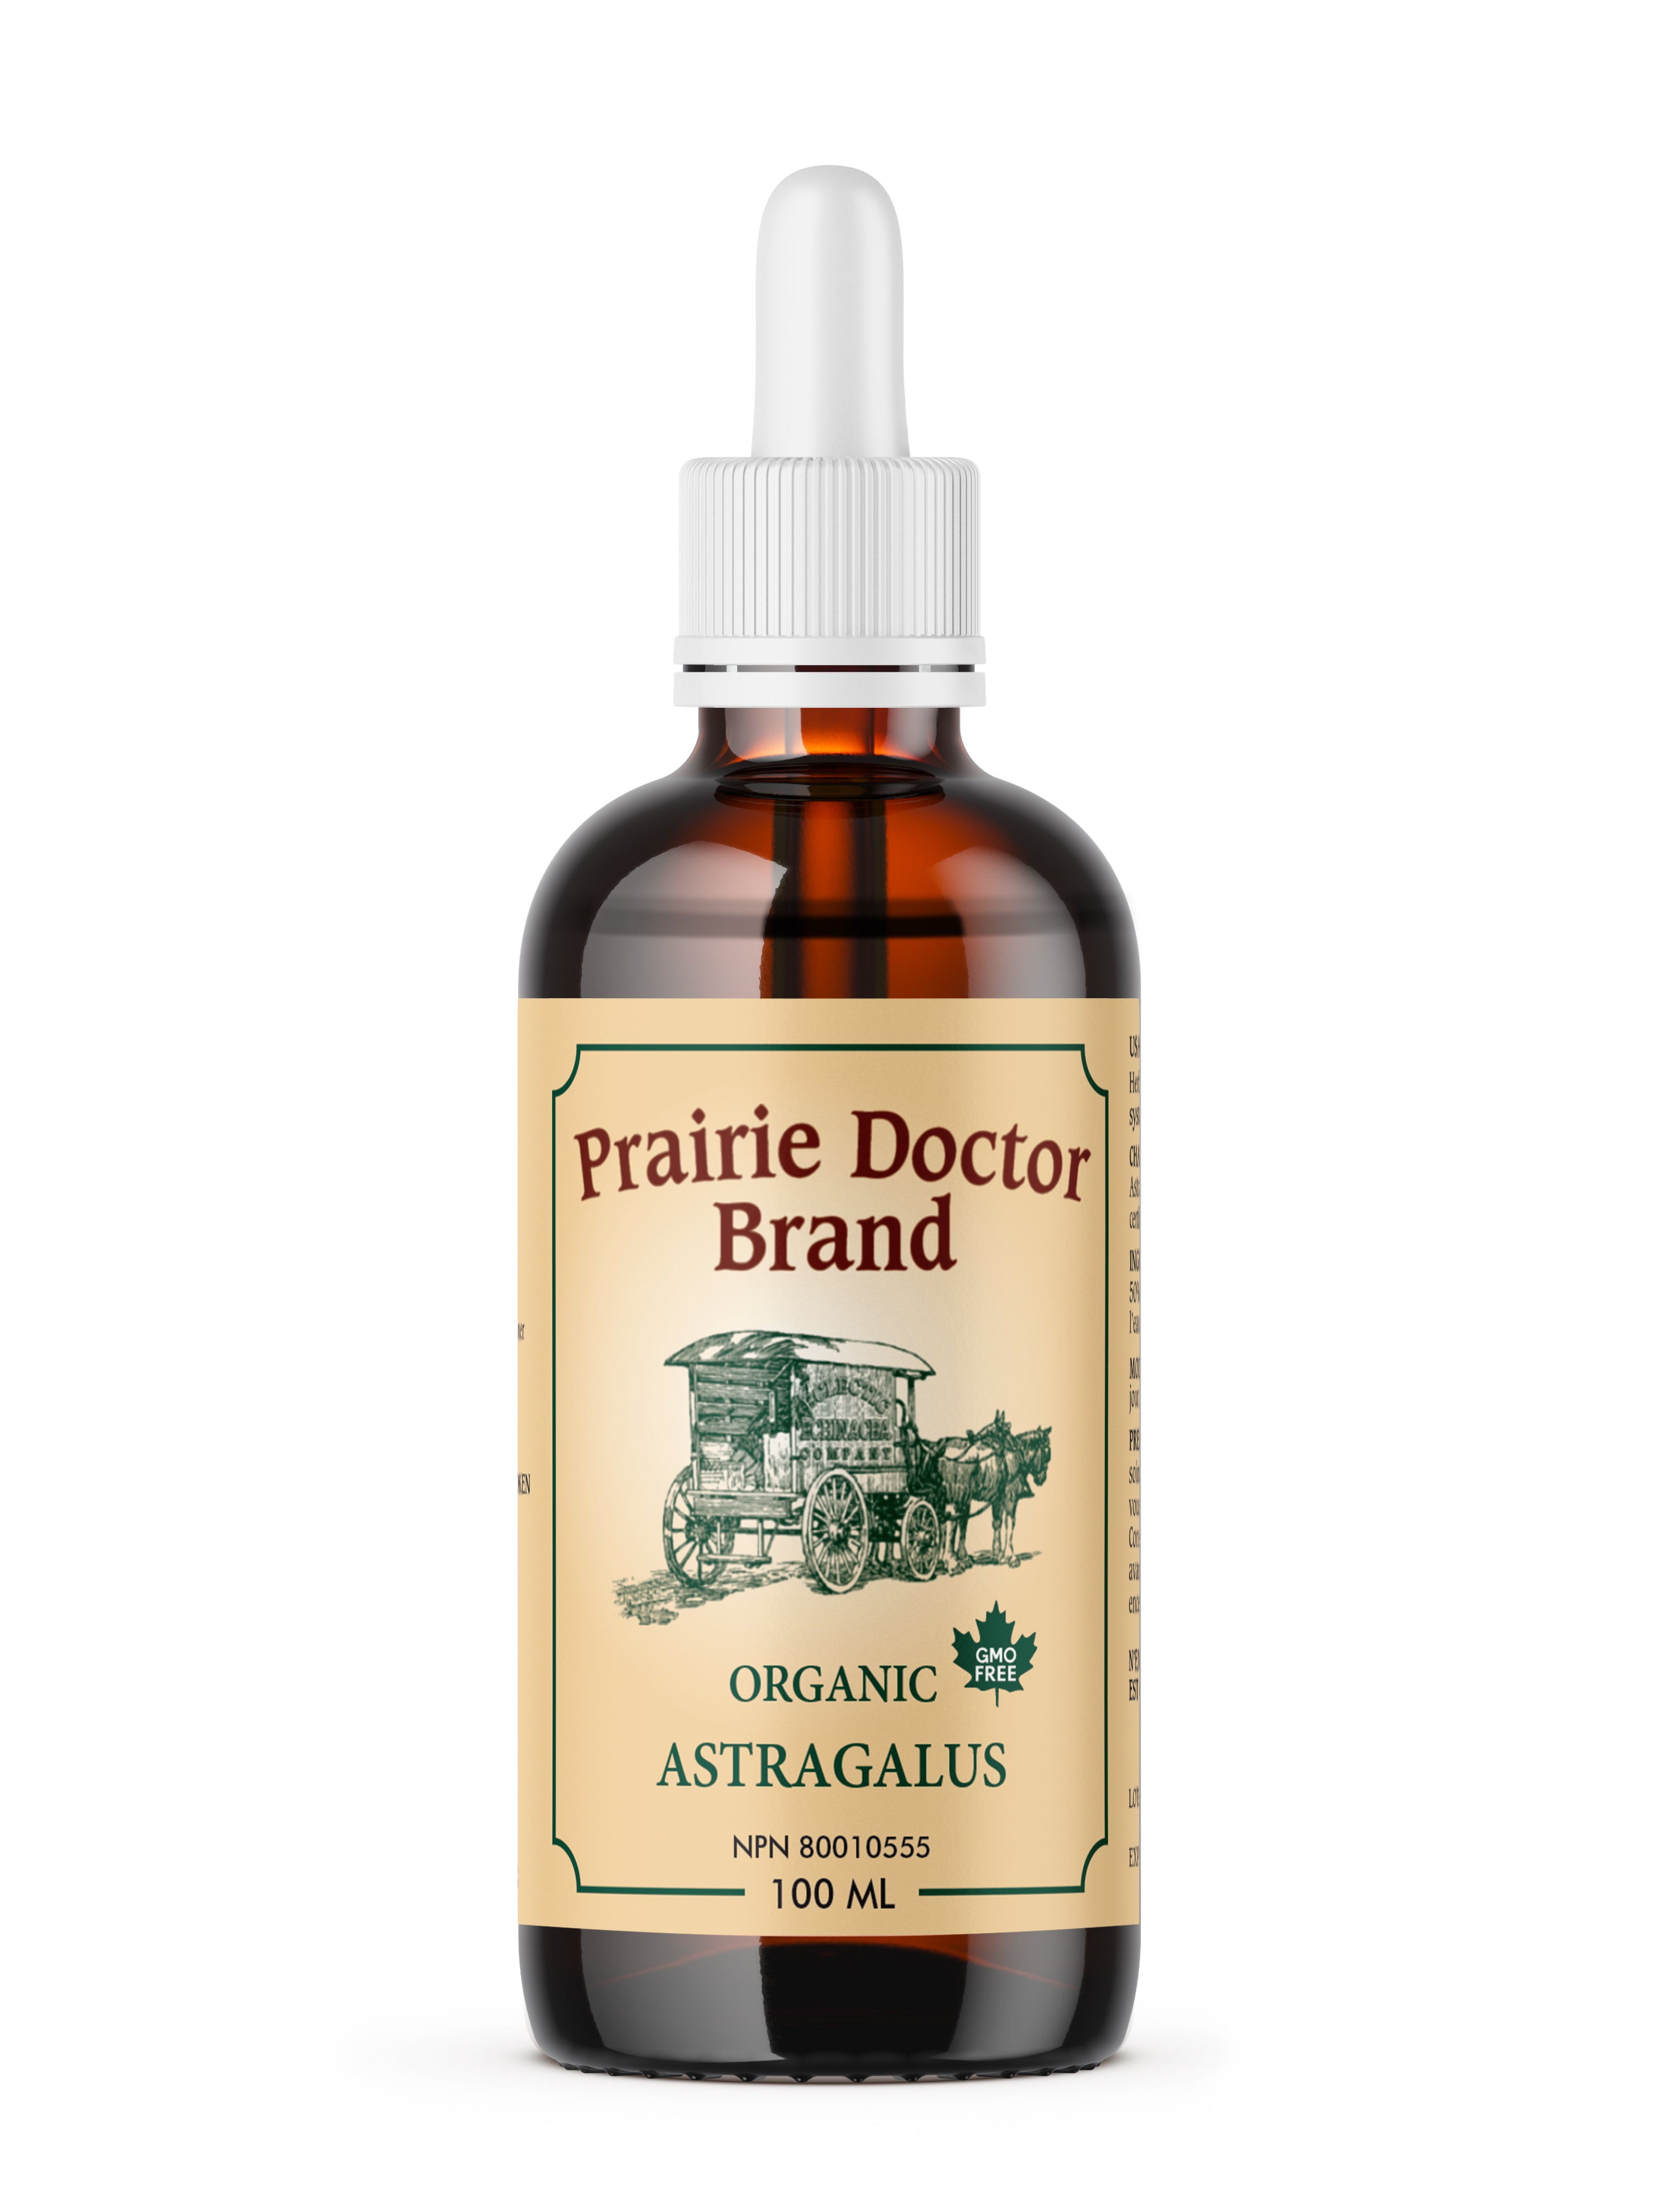 Prairie Doctor Astragalus (100ml) - Lifestyle Markets